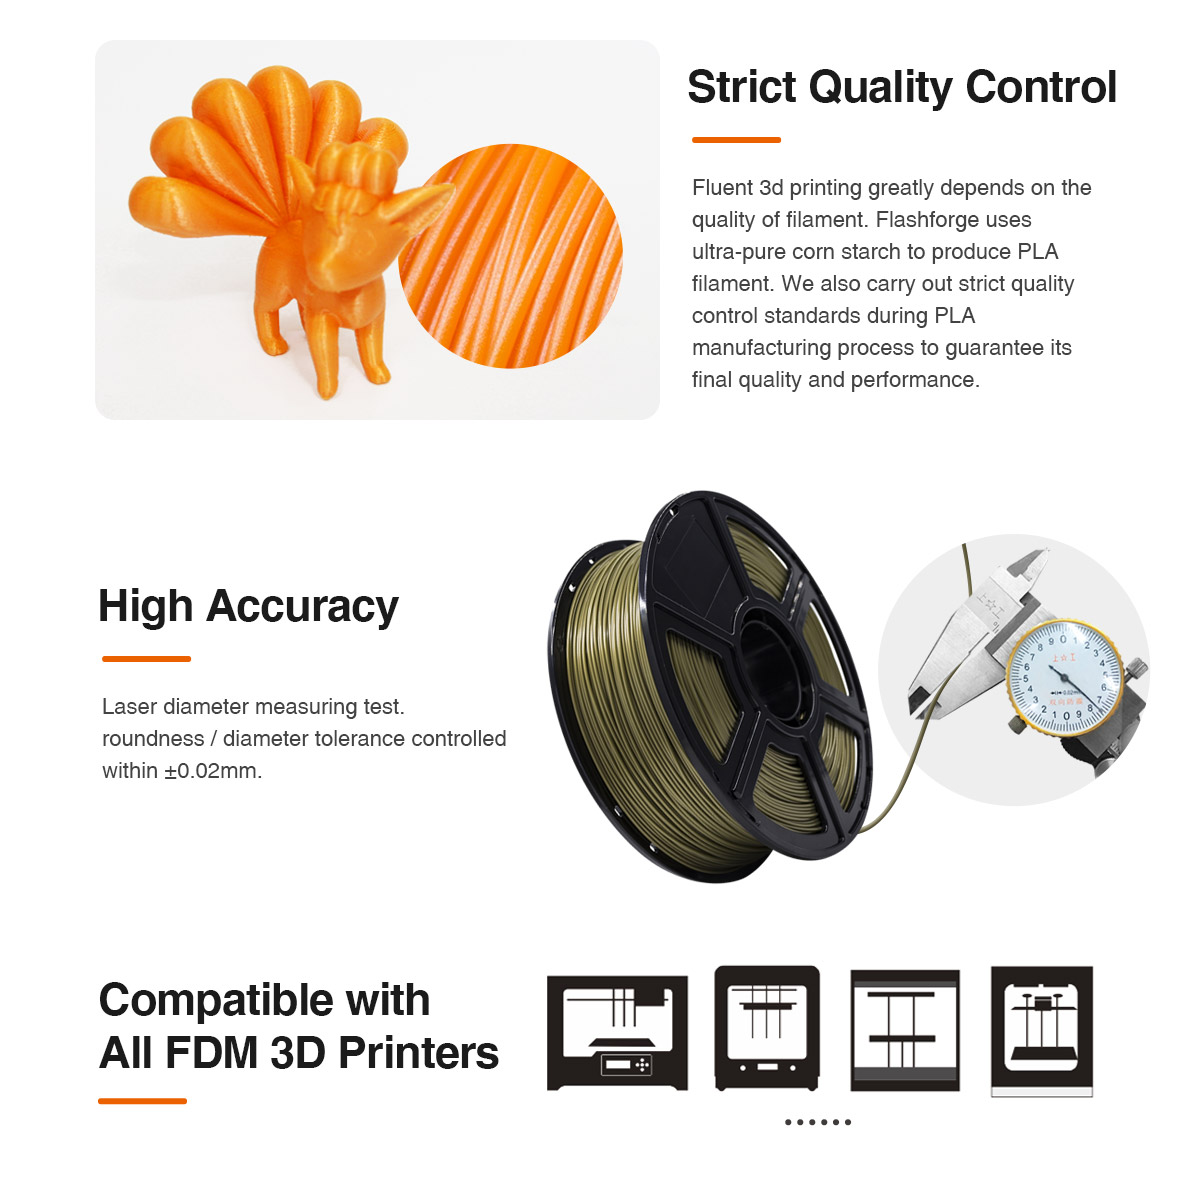 Le filament d'impression 3D flashforge pla prend en charge la plupart des imprimantes 3D FDM de haute précision | Flashforgeshop